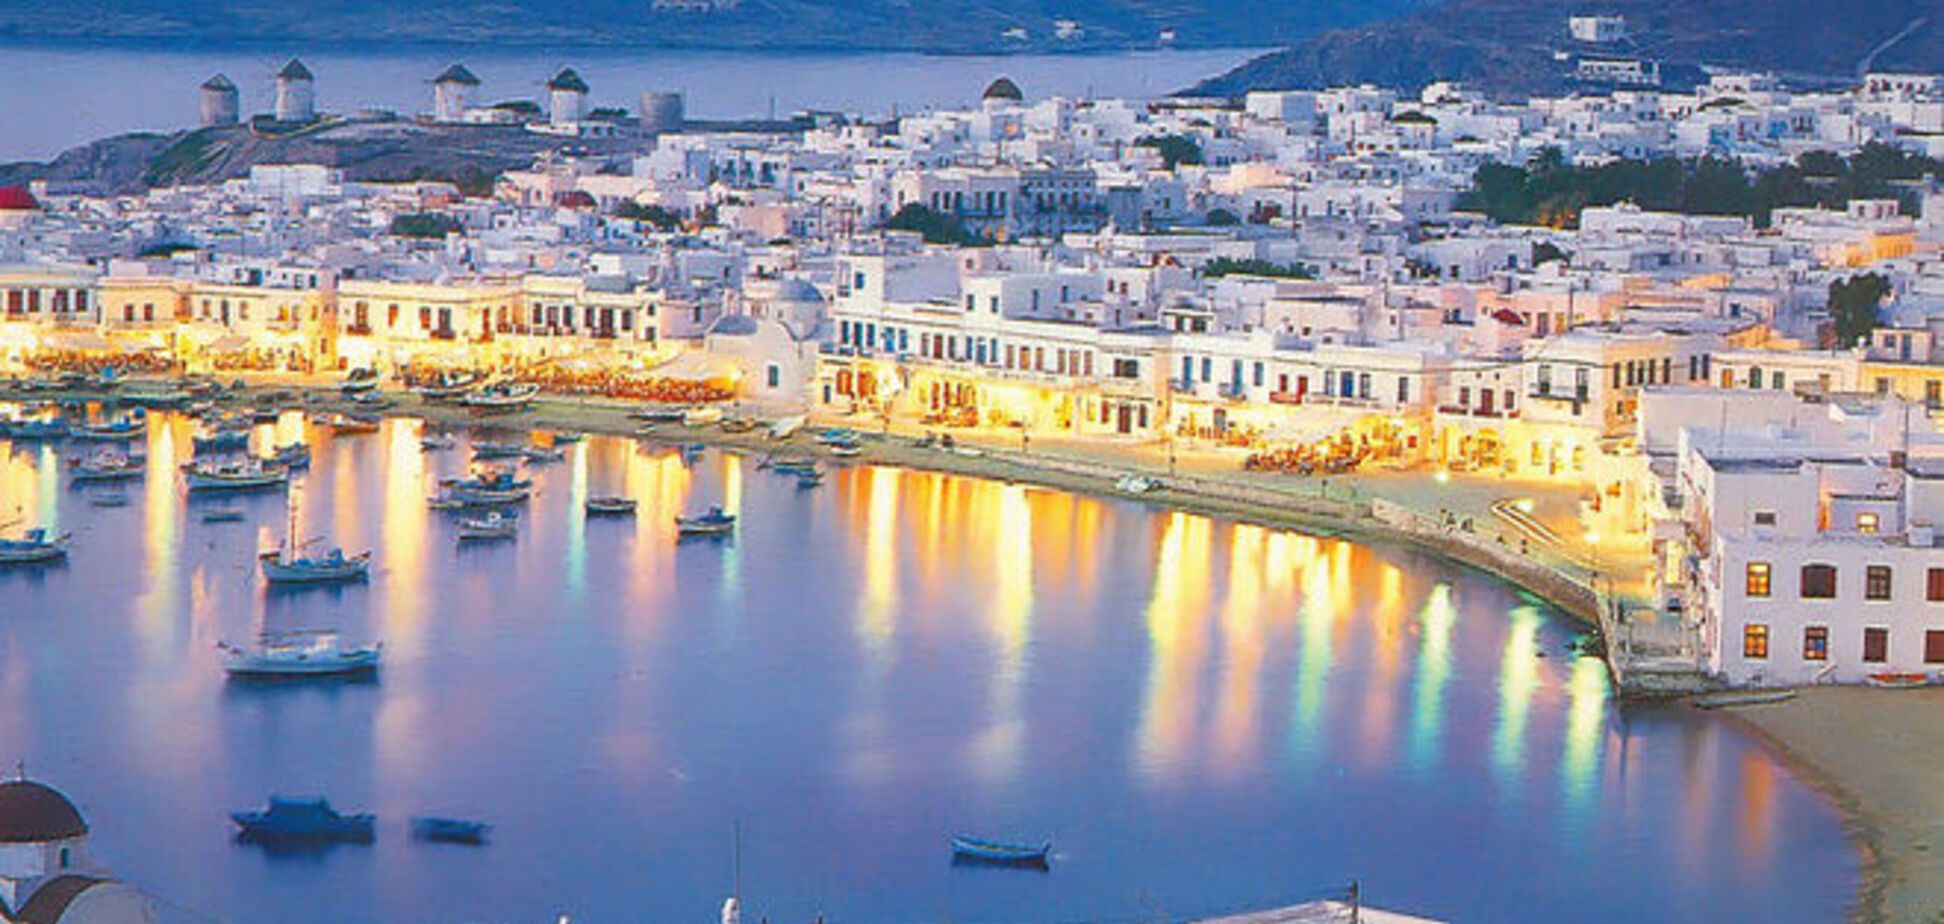 Божественные скидки: в Греции задешево распродают отели на островах